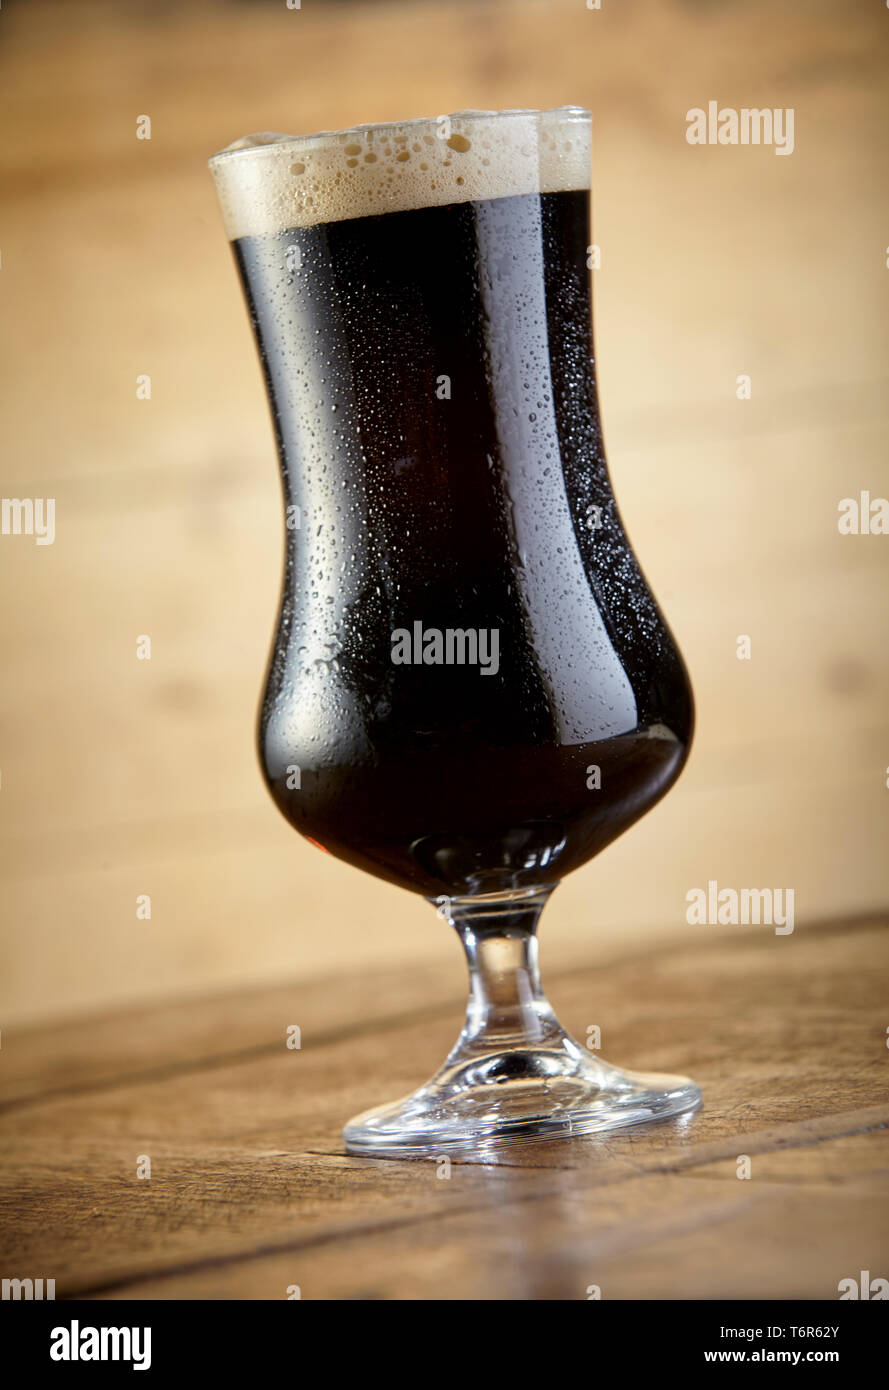 Vista ravvicinata di fresca birra Stout calice in piedi sulla tavola contro lo sfondo di legno Foto Stock